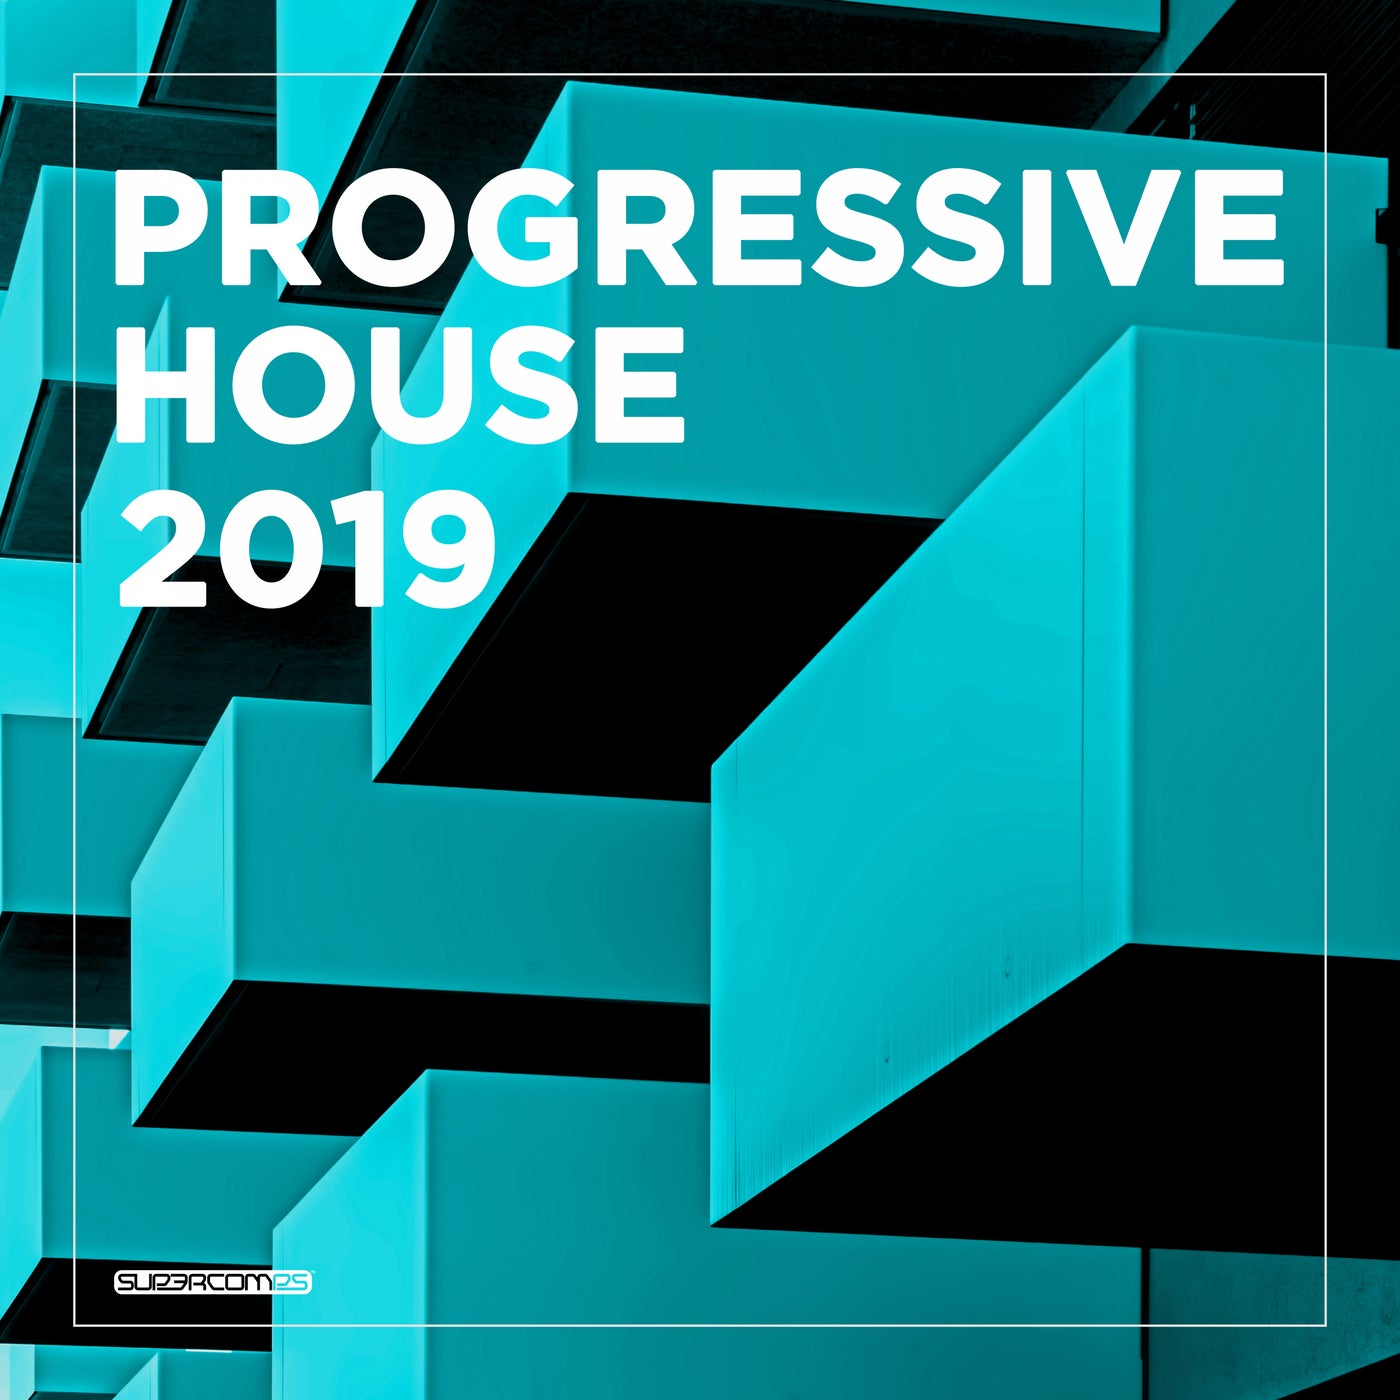 Progressive House 2019